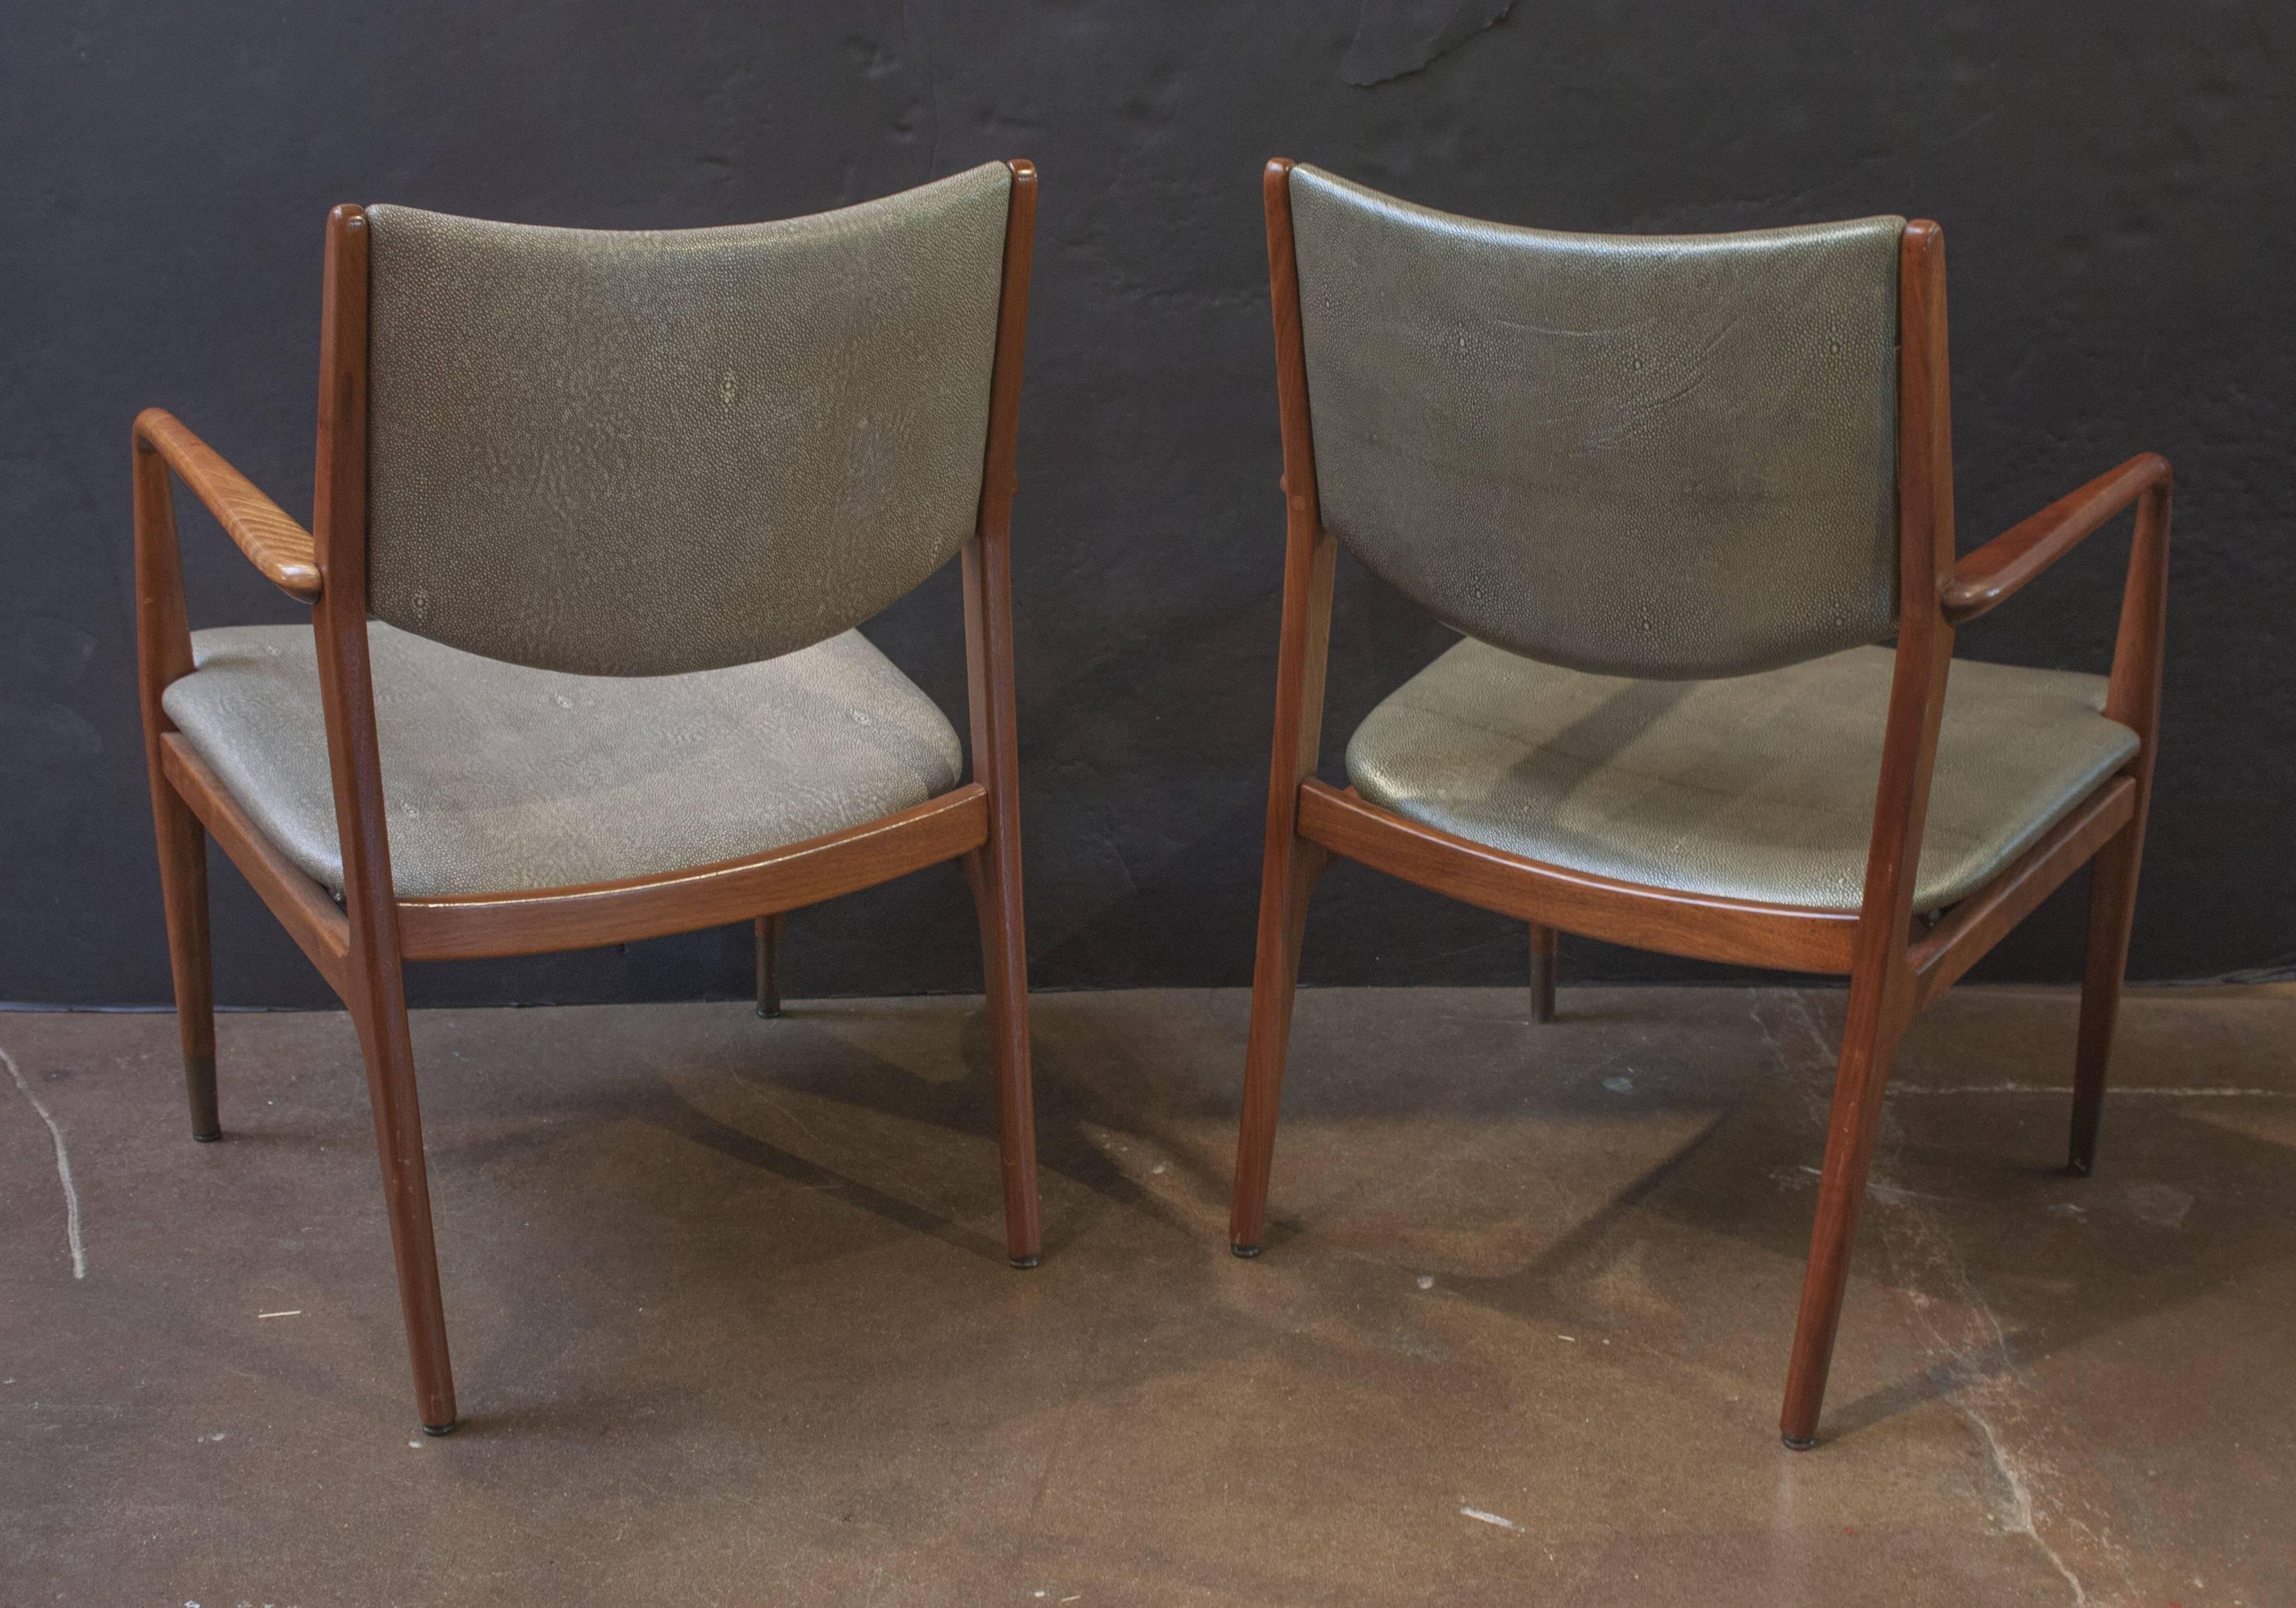 Ein hübsches und solides Paar moderner Sessel aus Nussbaumholz aus der Jahrhundertmitte, entworfen von George Reinoehl für Stow Davis, Grand Rapids, MI. Die klaren Linien und das minimalistische Design erinnern an die Schönheit des skandinavischen